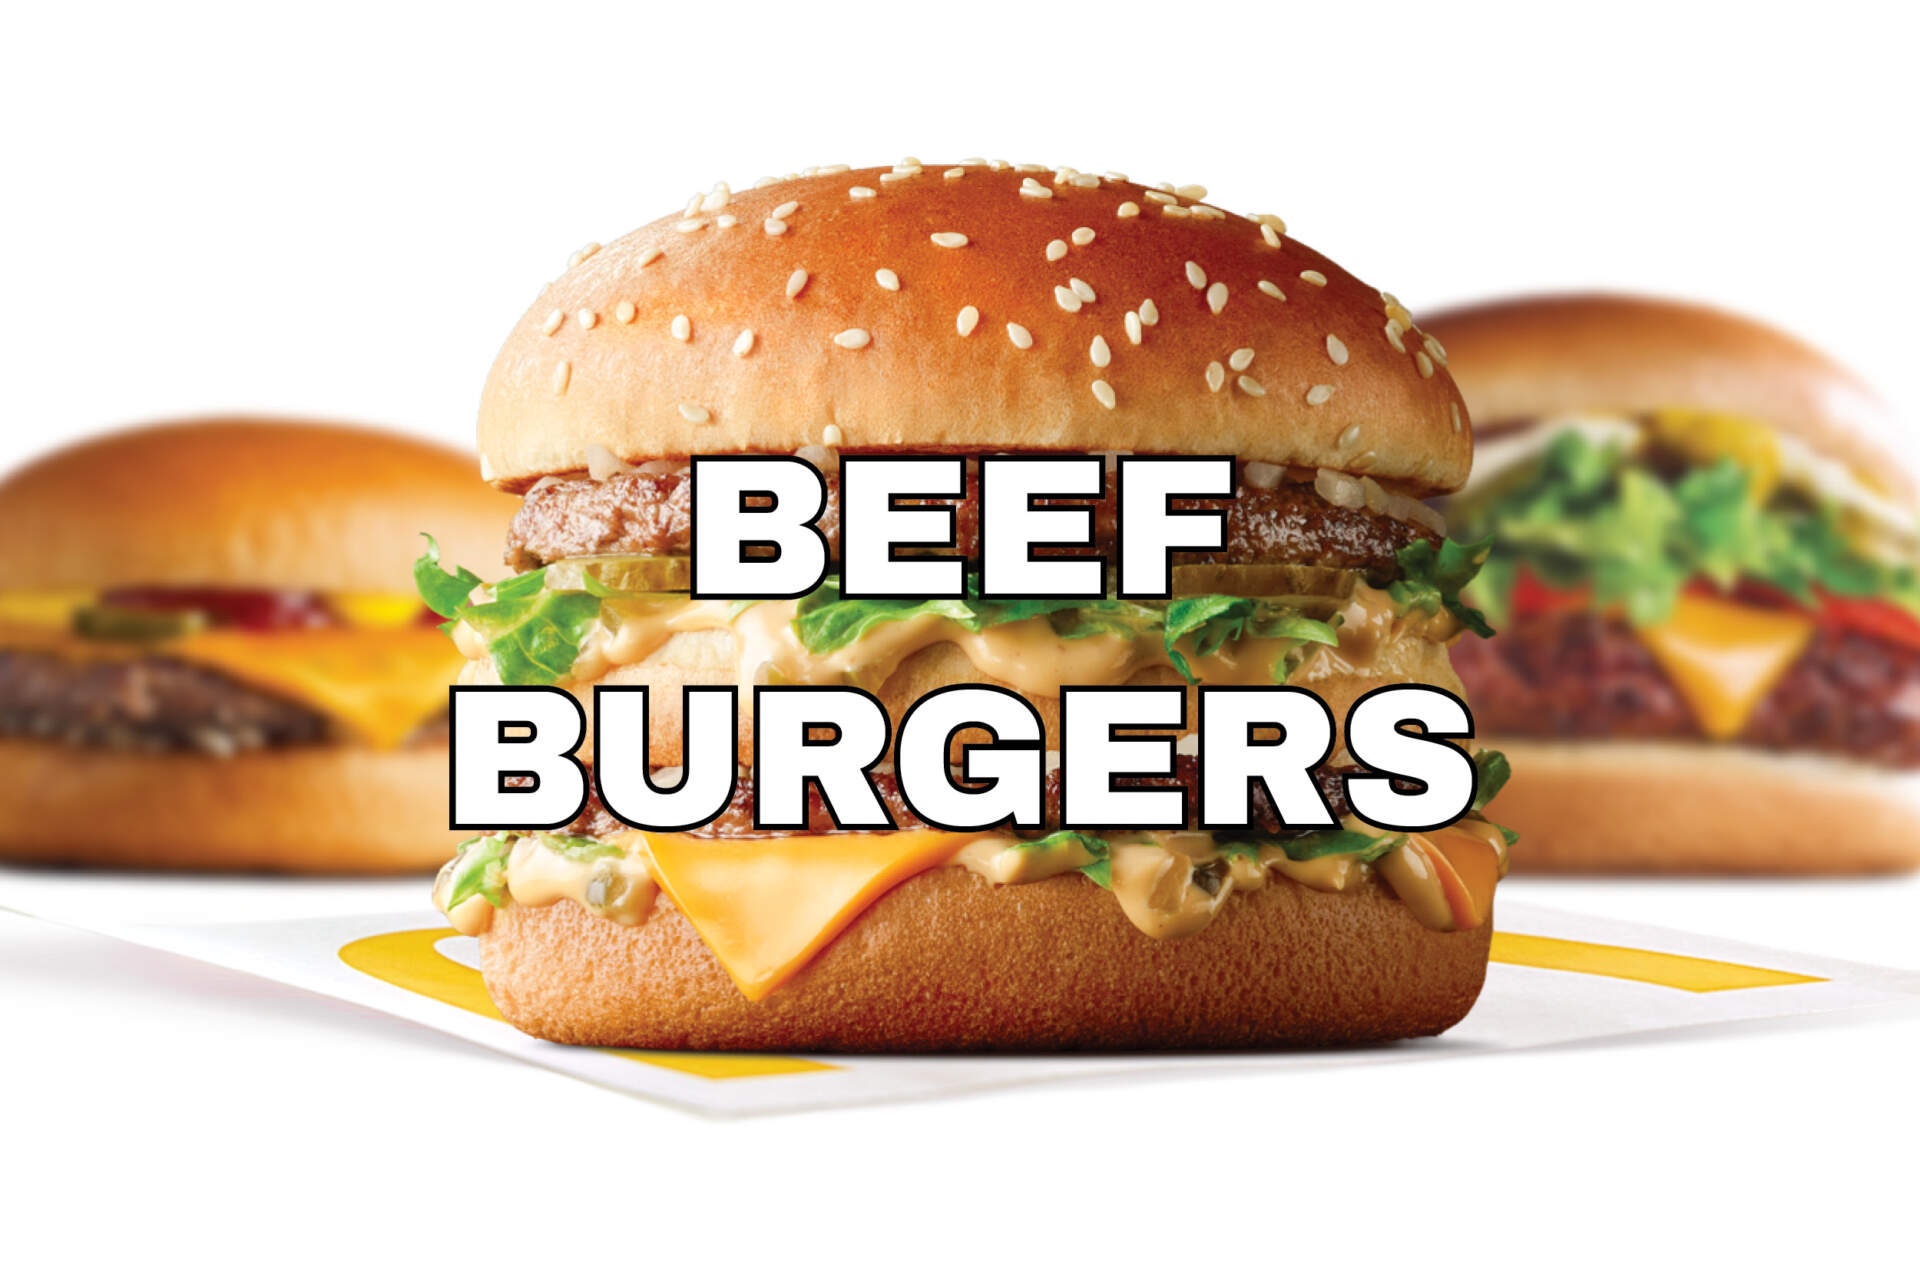 Beef Burgers